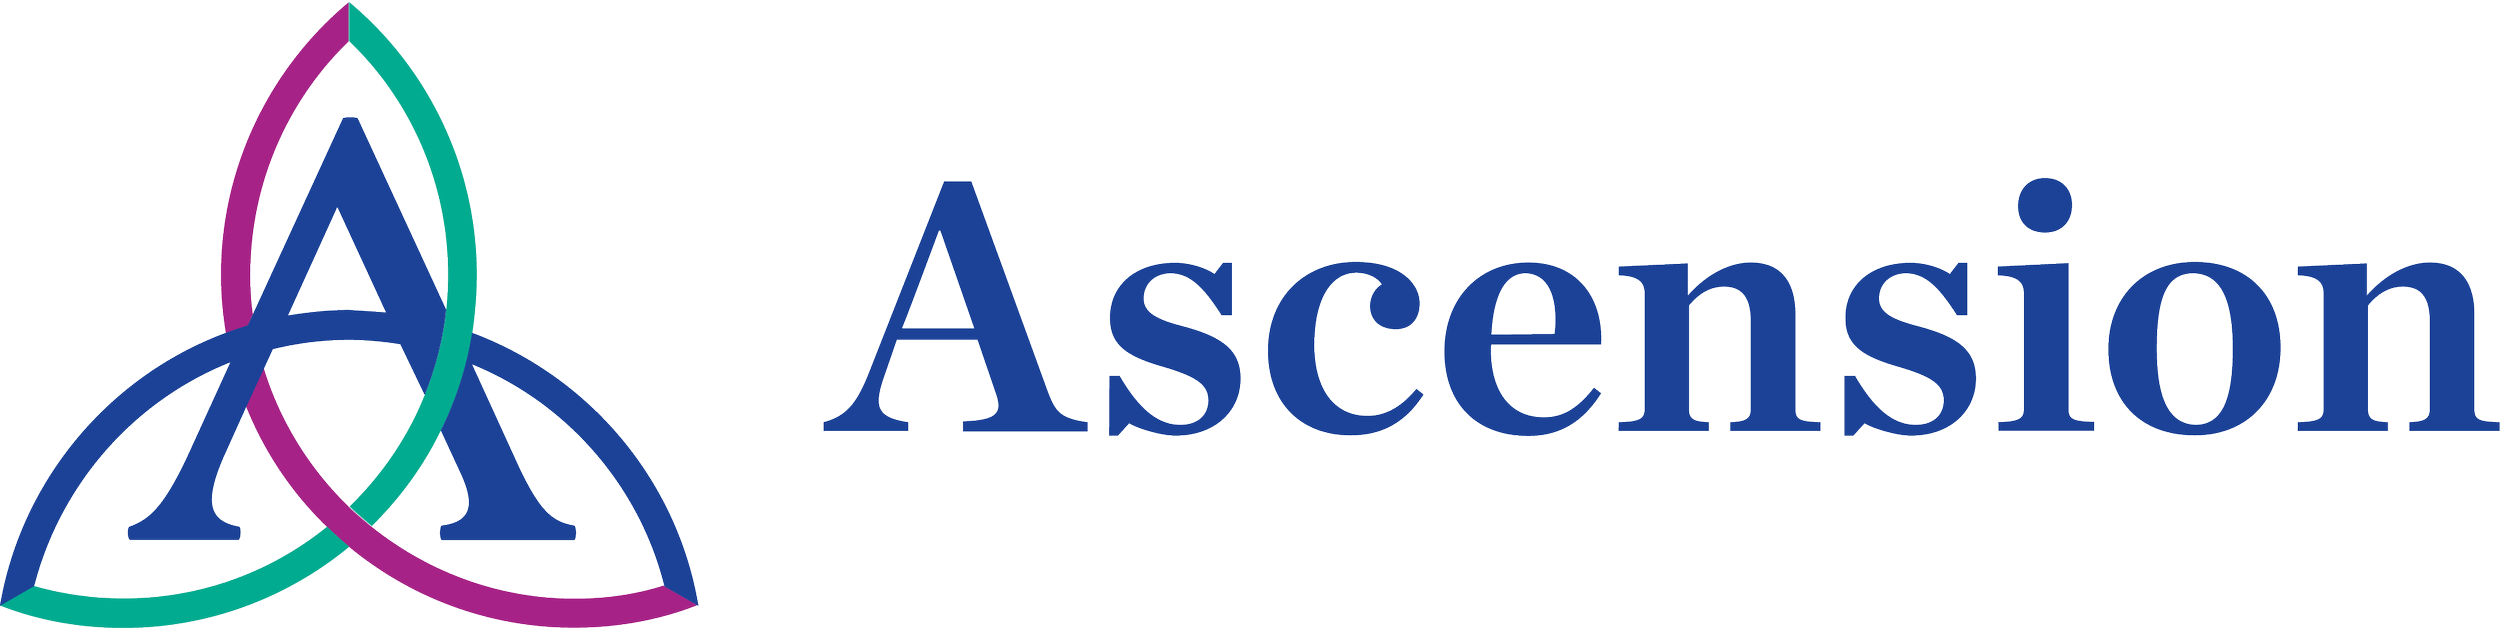 ascension-logo-01.png